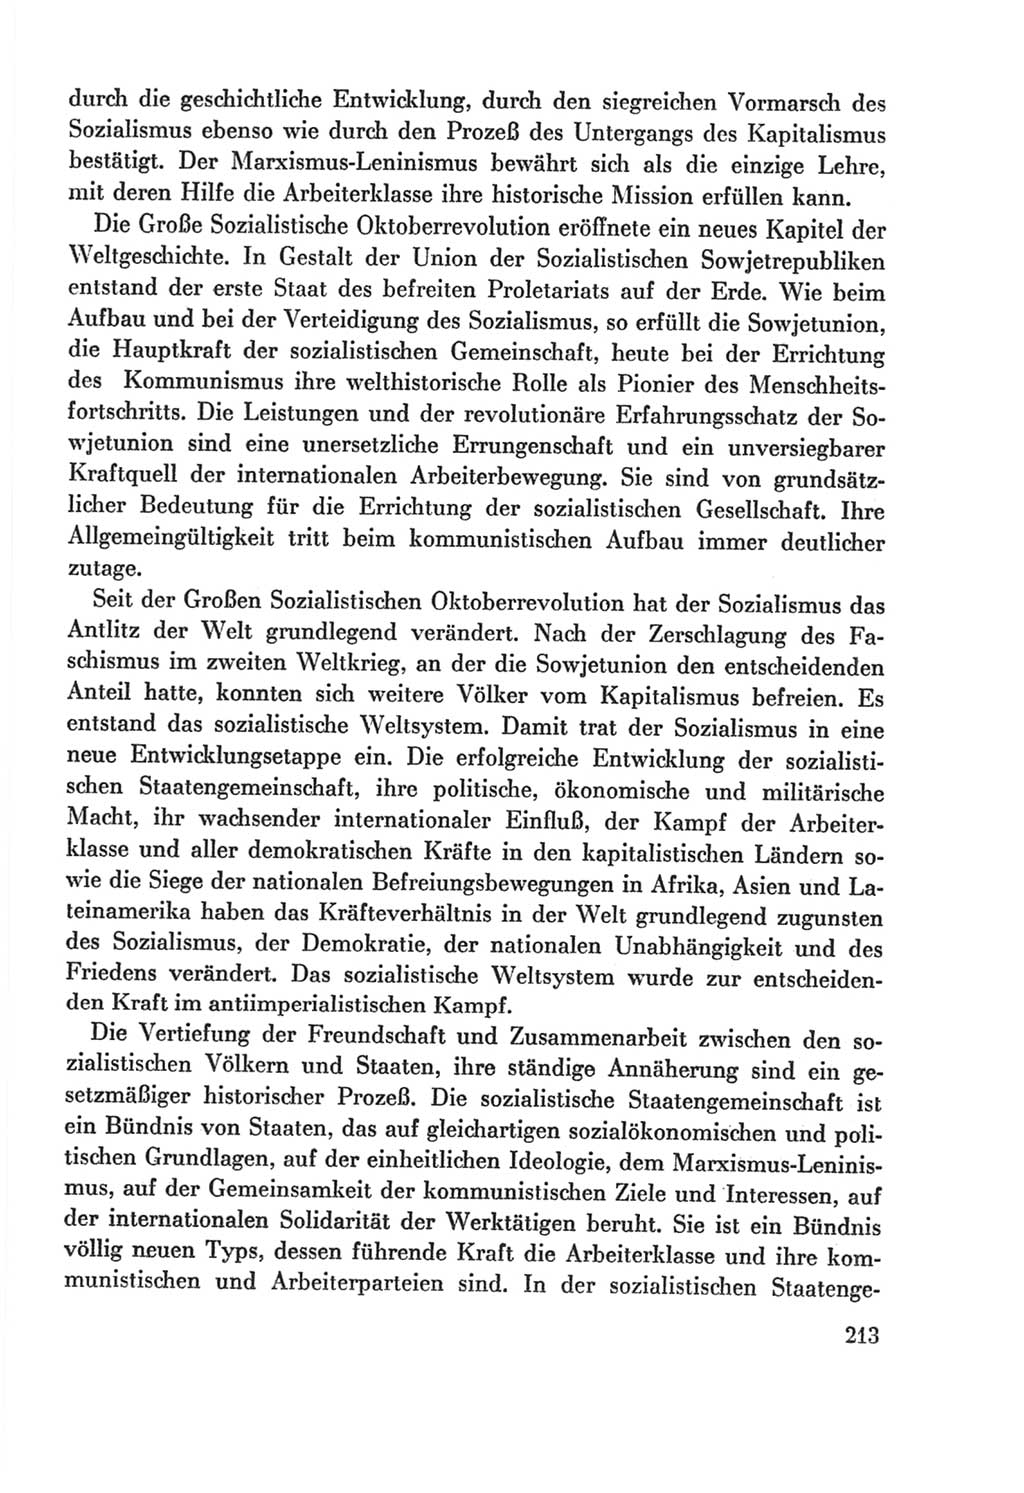 Protokoll der Verhandlungen des Ⅸ. Parteitages der Sozialistischen Einheitspartei Deutschlands (SED) [Deutsche Demokratische Republik (DDR)] 1976, Band 2, Seite 213 (Prot. Verh. Ⅸ. PT SED DDR 1976, Bd. 2, S. 213)